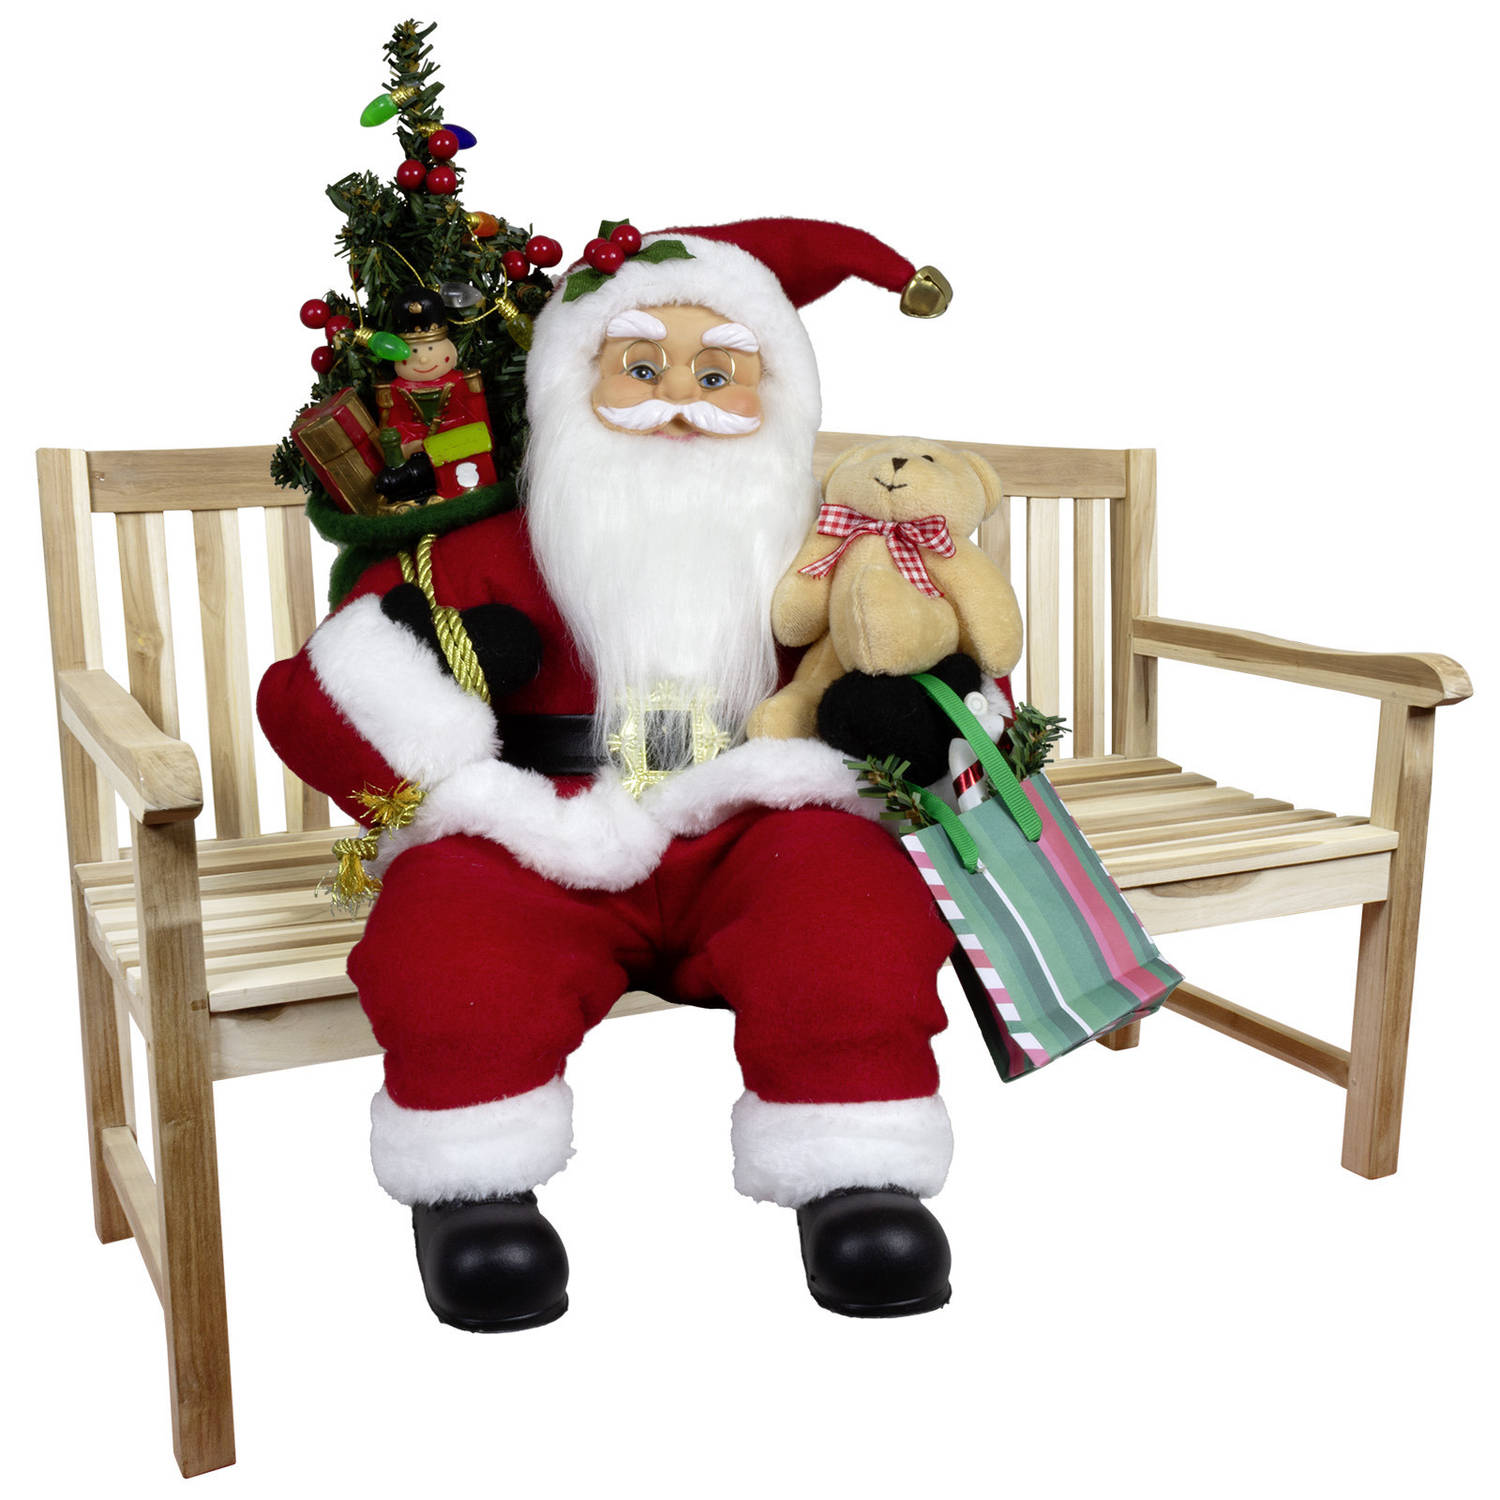 Kerstman decoratie pop Gijs - H45 cm - rood - zittend - kerst beeld - kerst figuur